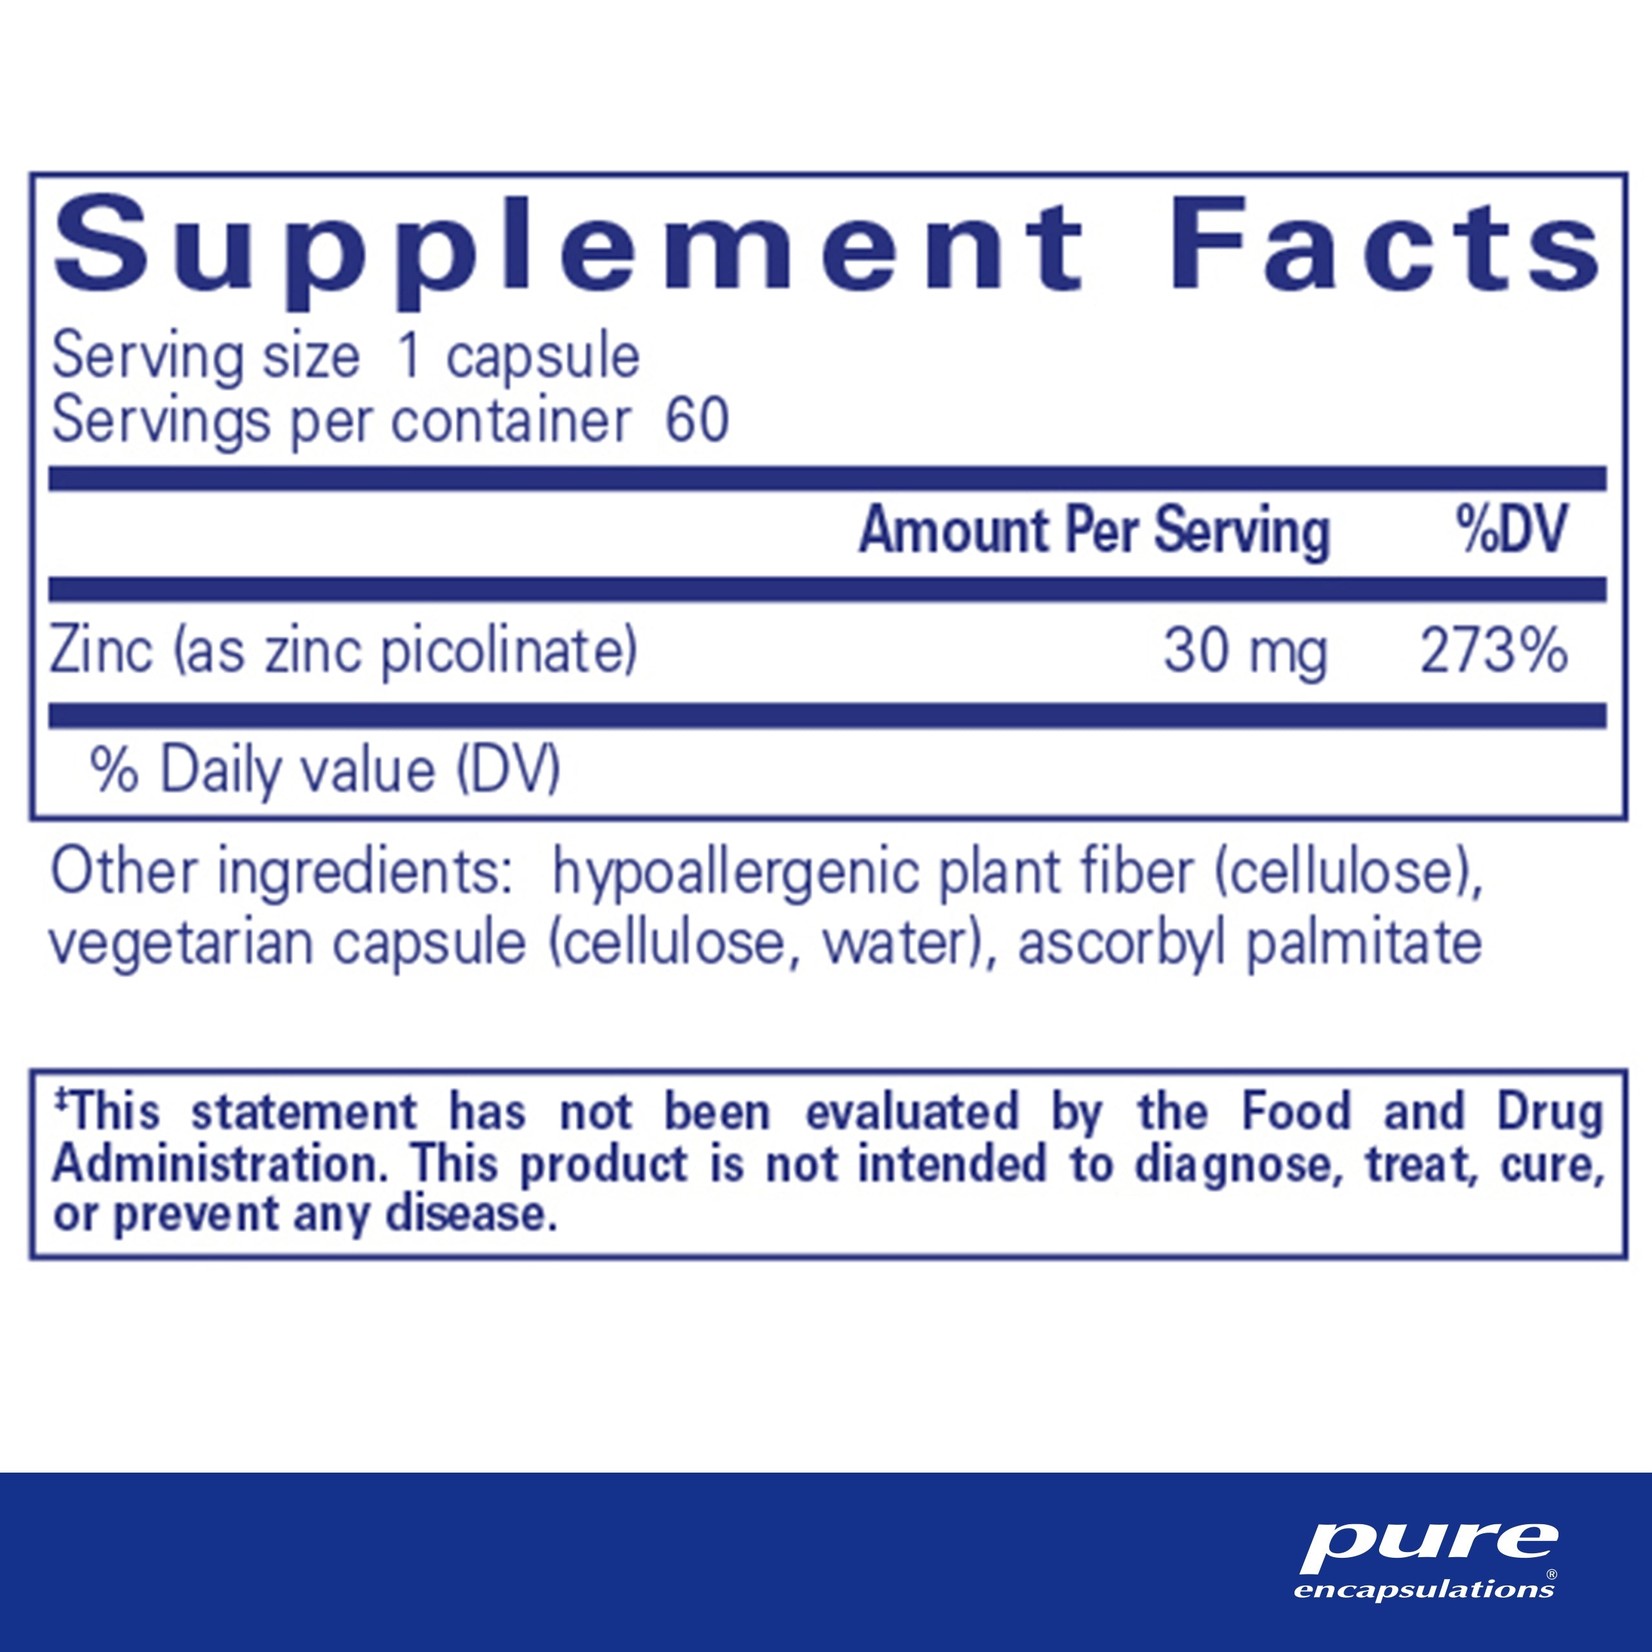 Pure Encapsulations Pure Encapsulations - Zinc 30 - 60 Veg Capsules